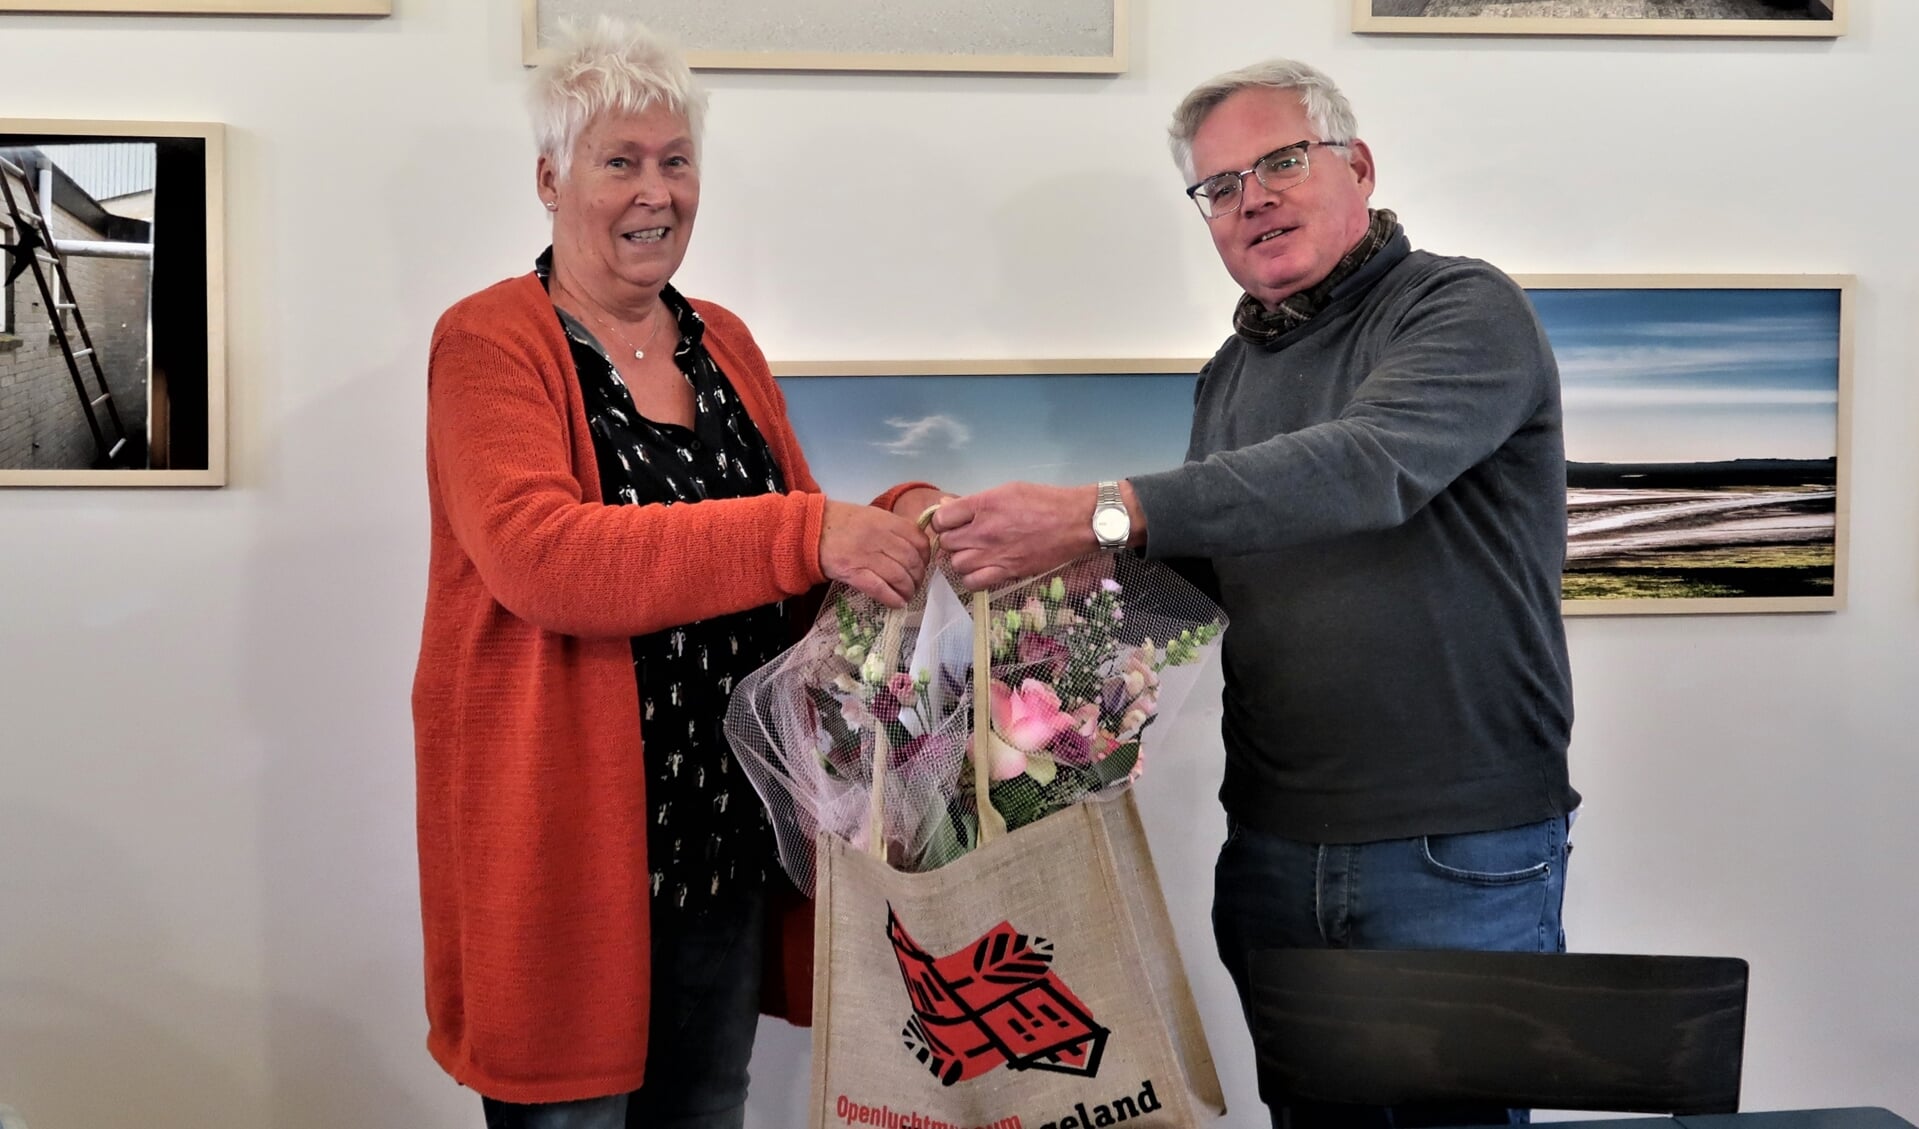 Museumdirecteur Stijn van Genuchten is blij met trouwe vrijwilligster Martha van Olst.